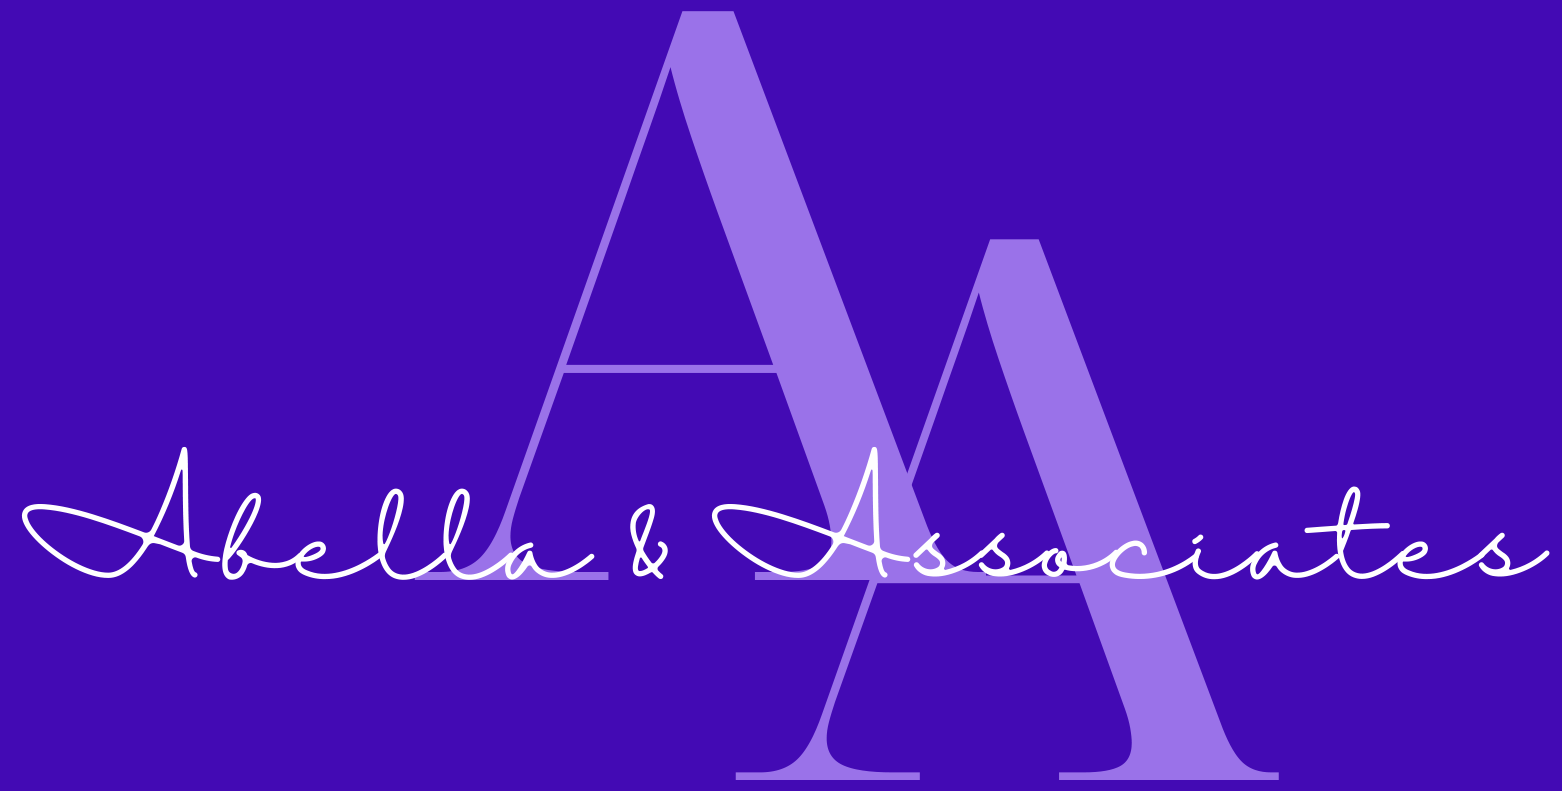 Abella and Associates logo